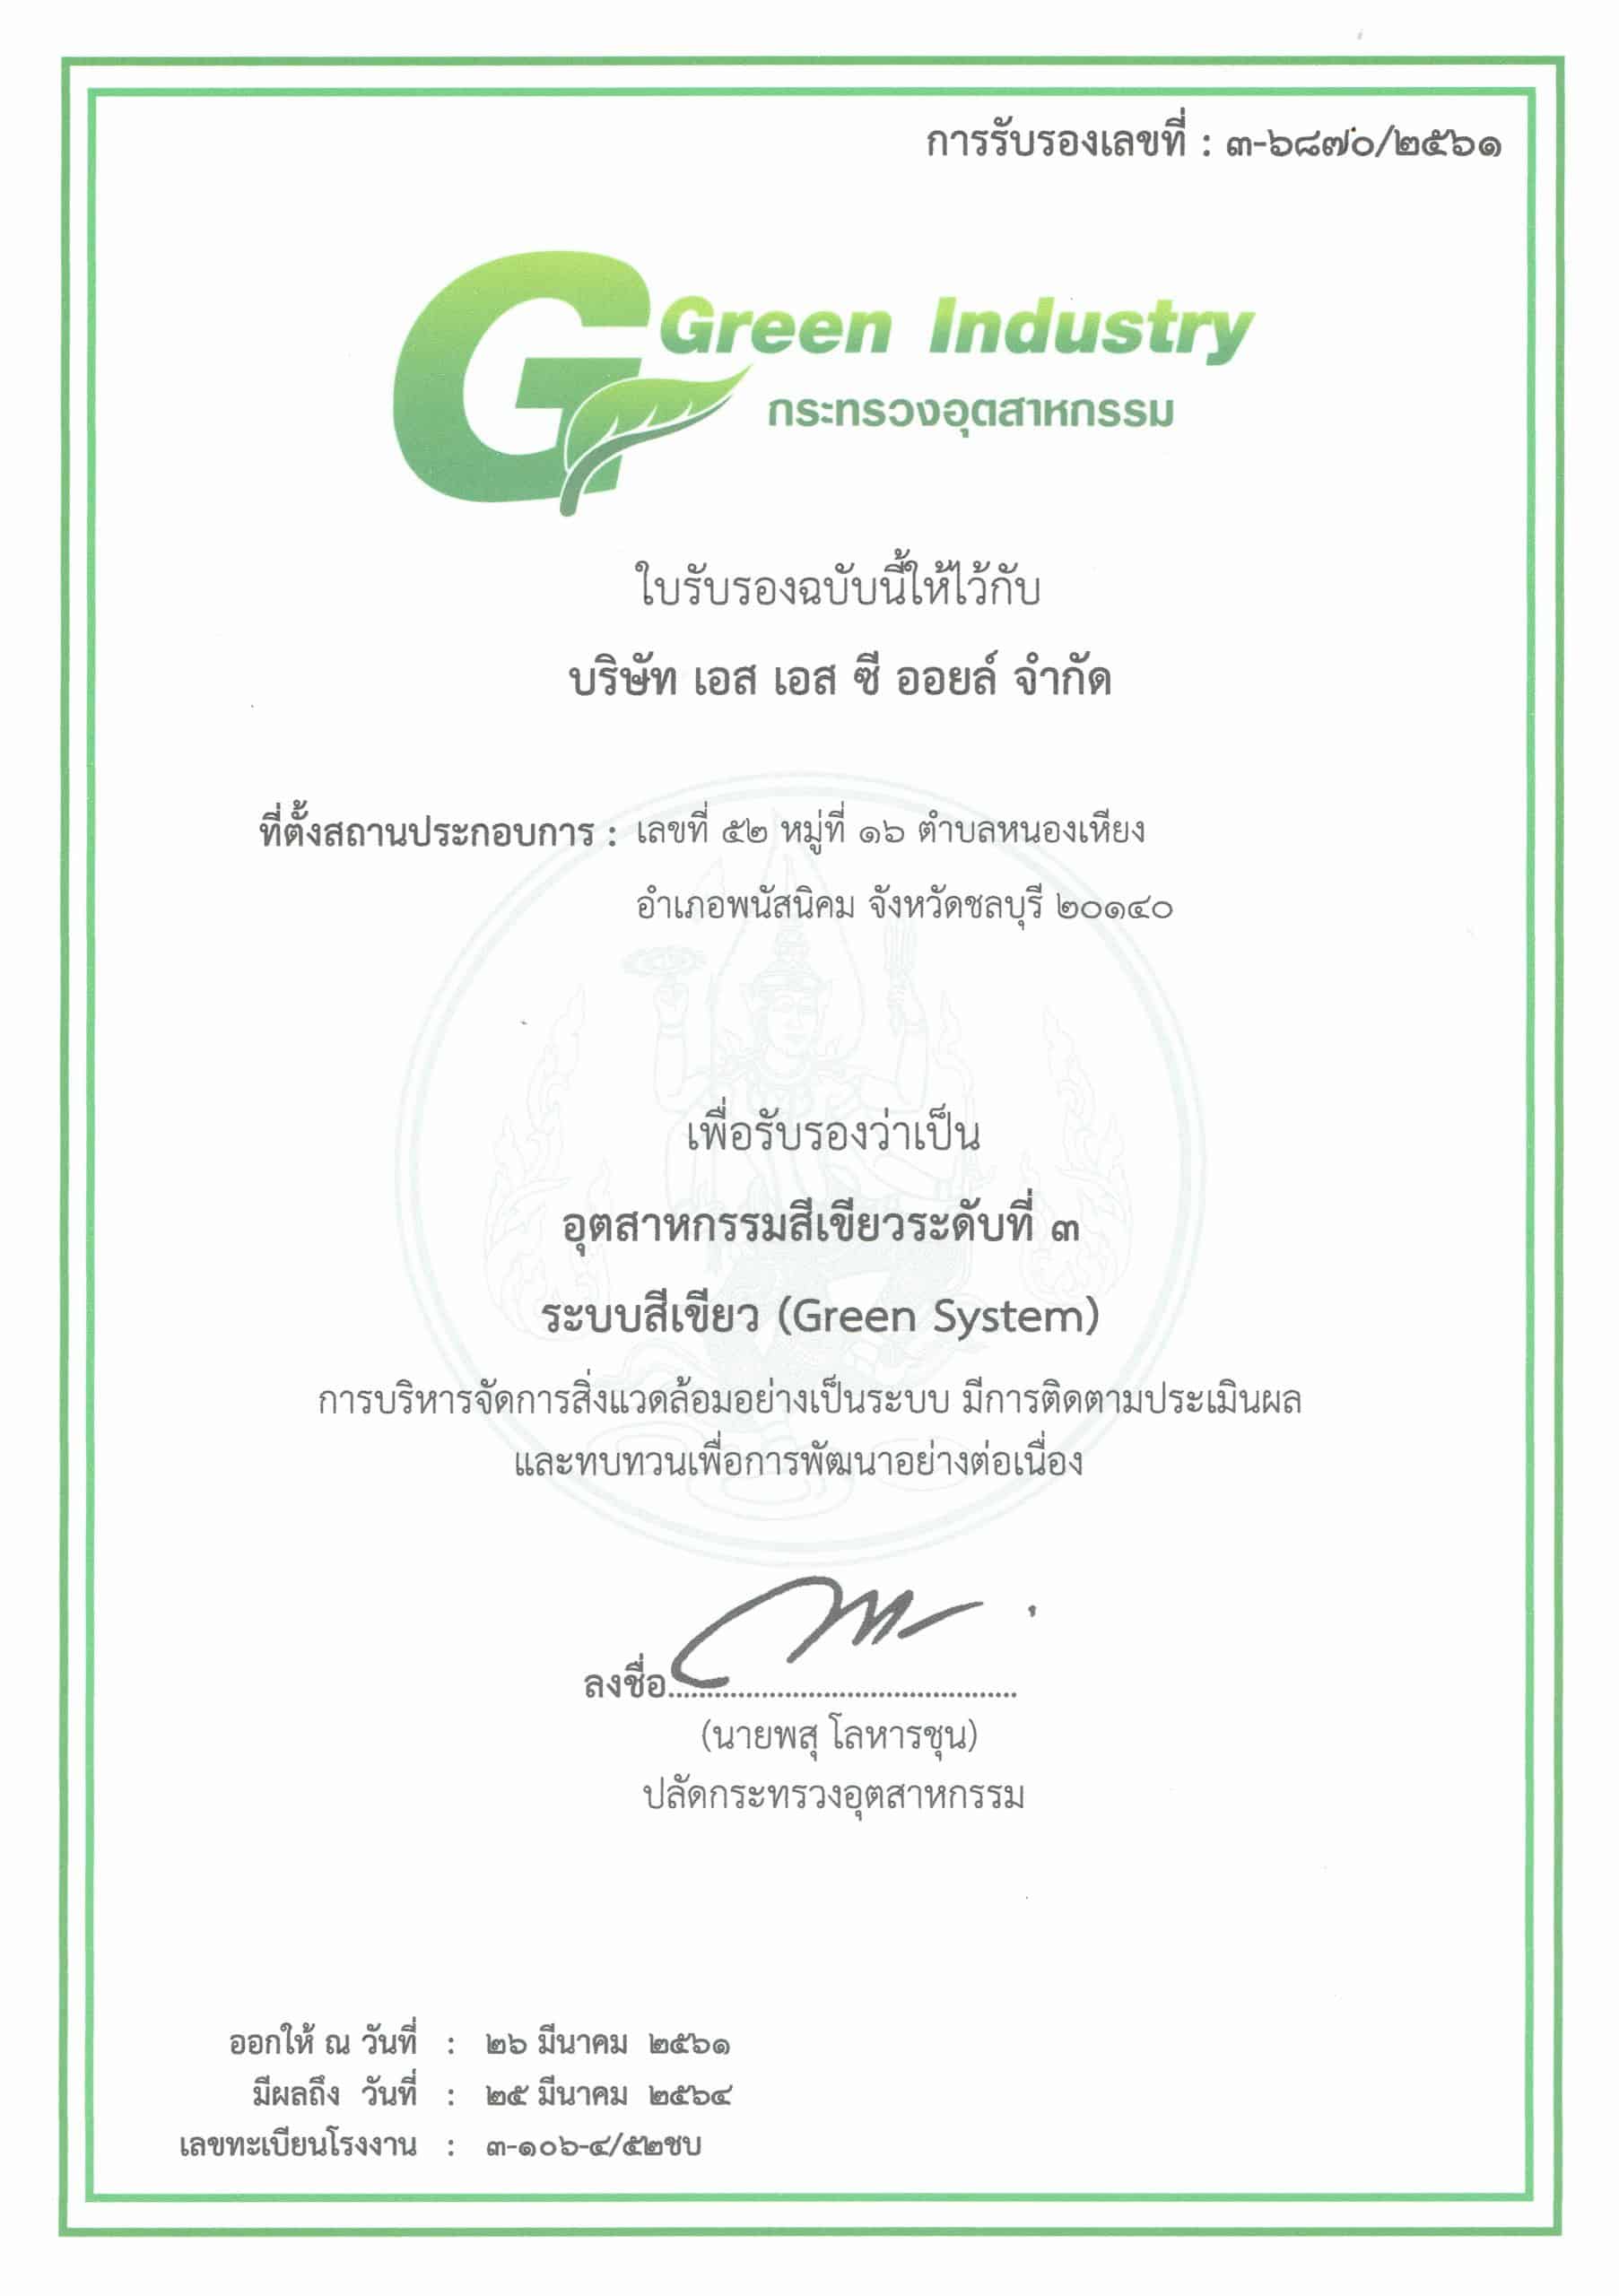 โรงงานสีเขียว(อุตสาหกรรม) GI3 SSCOIL